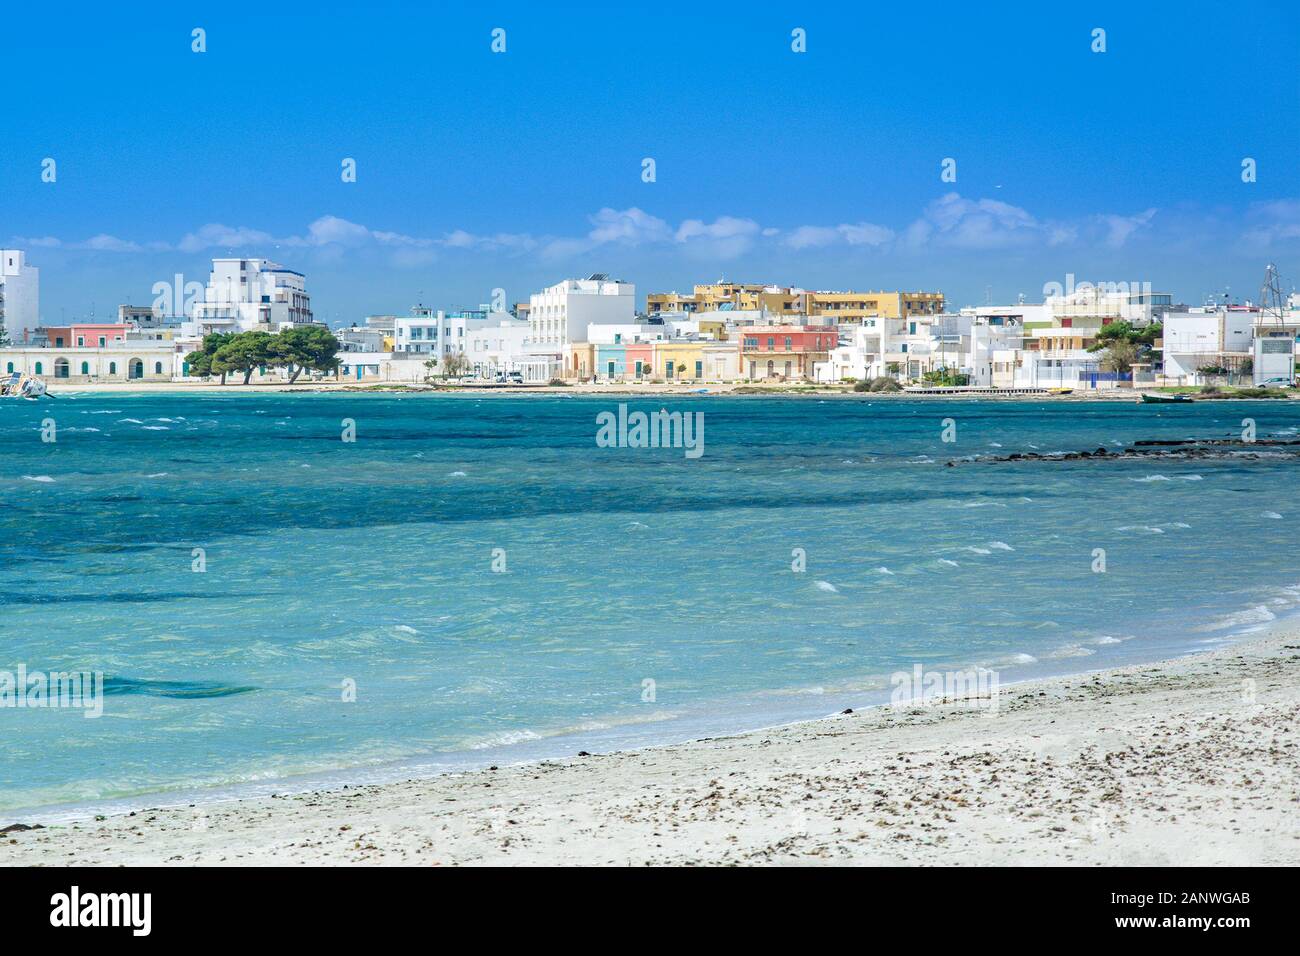 Porto Cesareo  near Lecce, Puglia, Italy by Mediterranean (Ionian) Sea Stock Photo